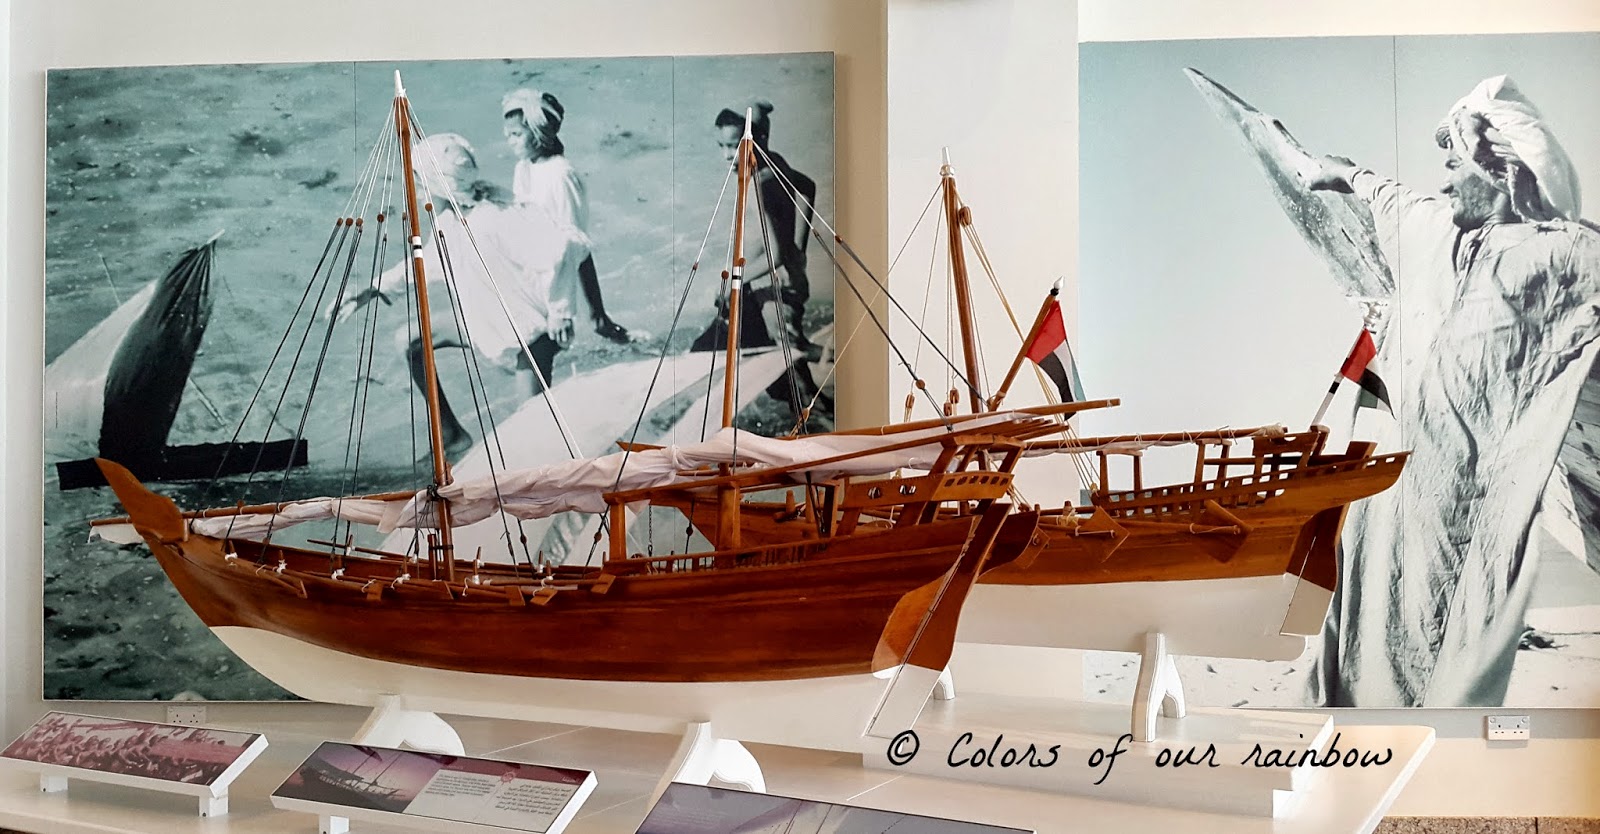 Sharjah maritime museum